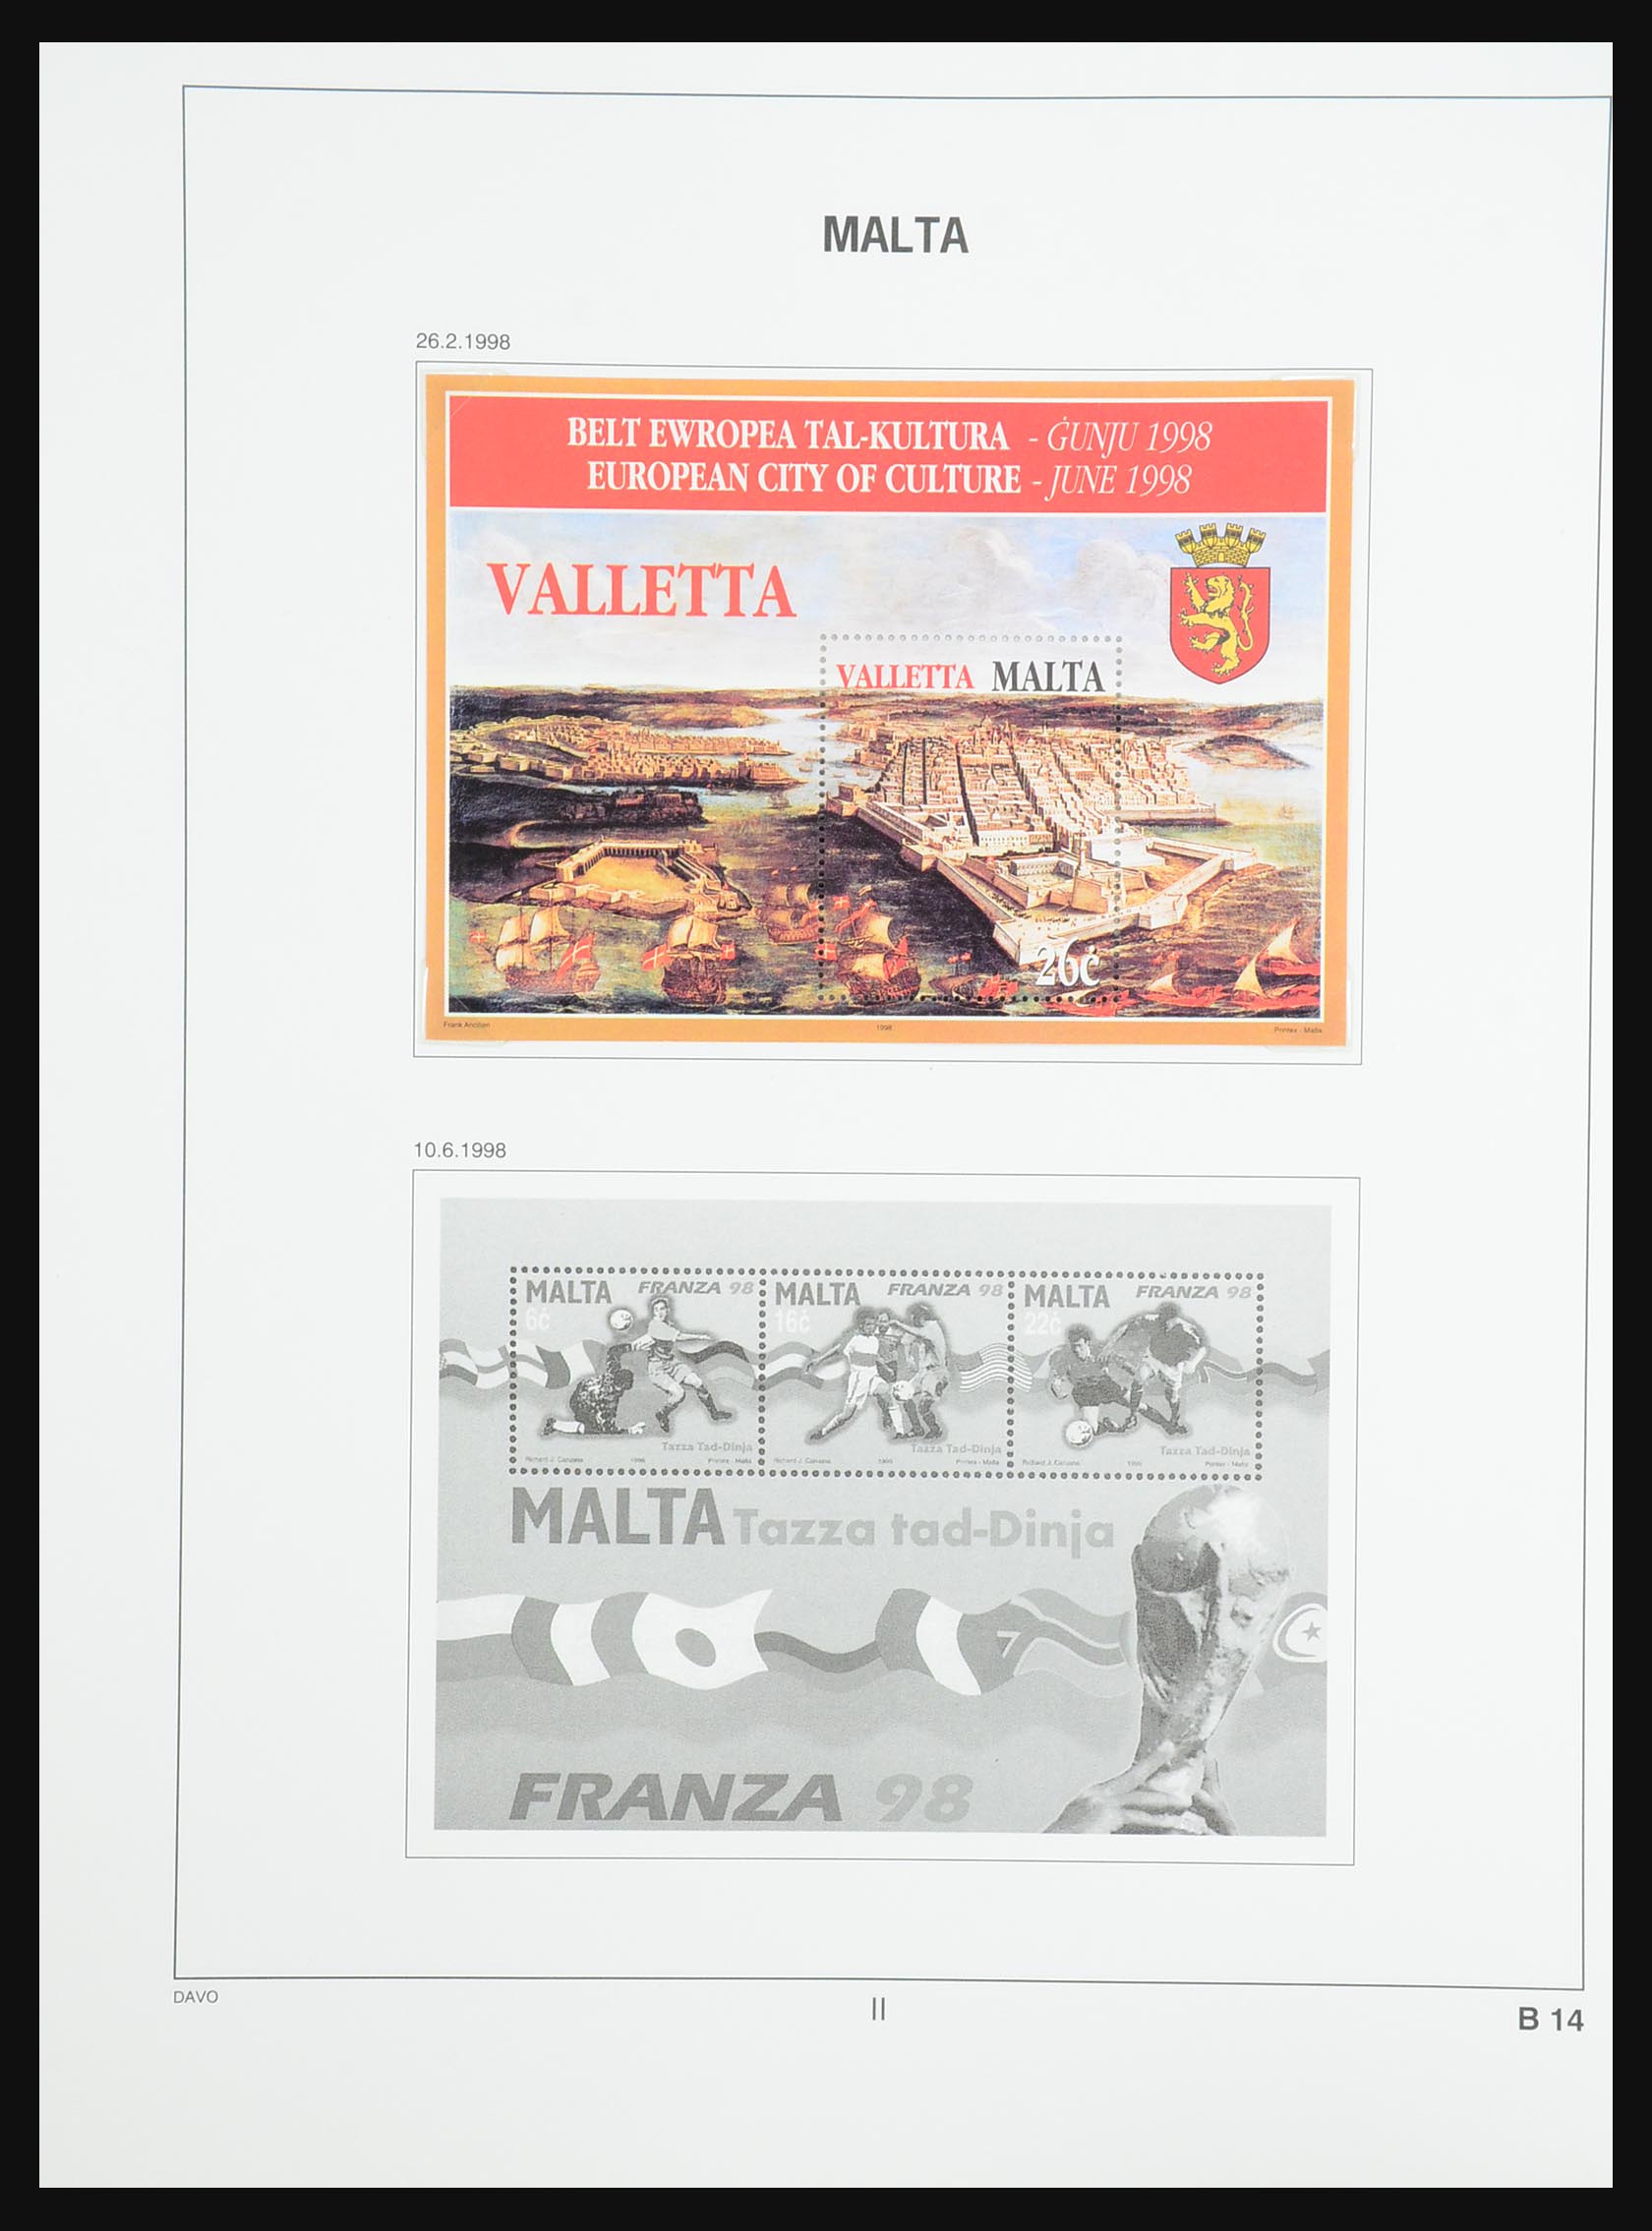 31431 158 - 31431 Malta 1863-2006.